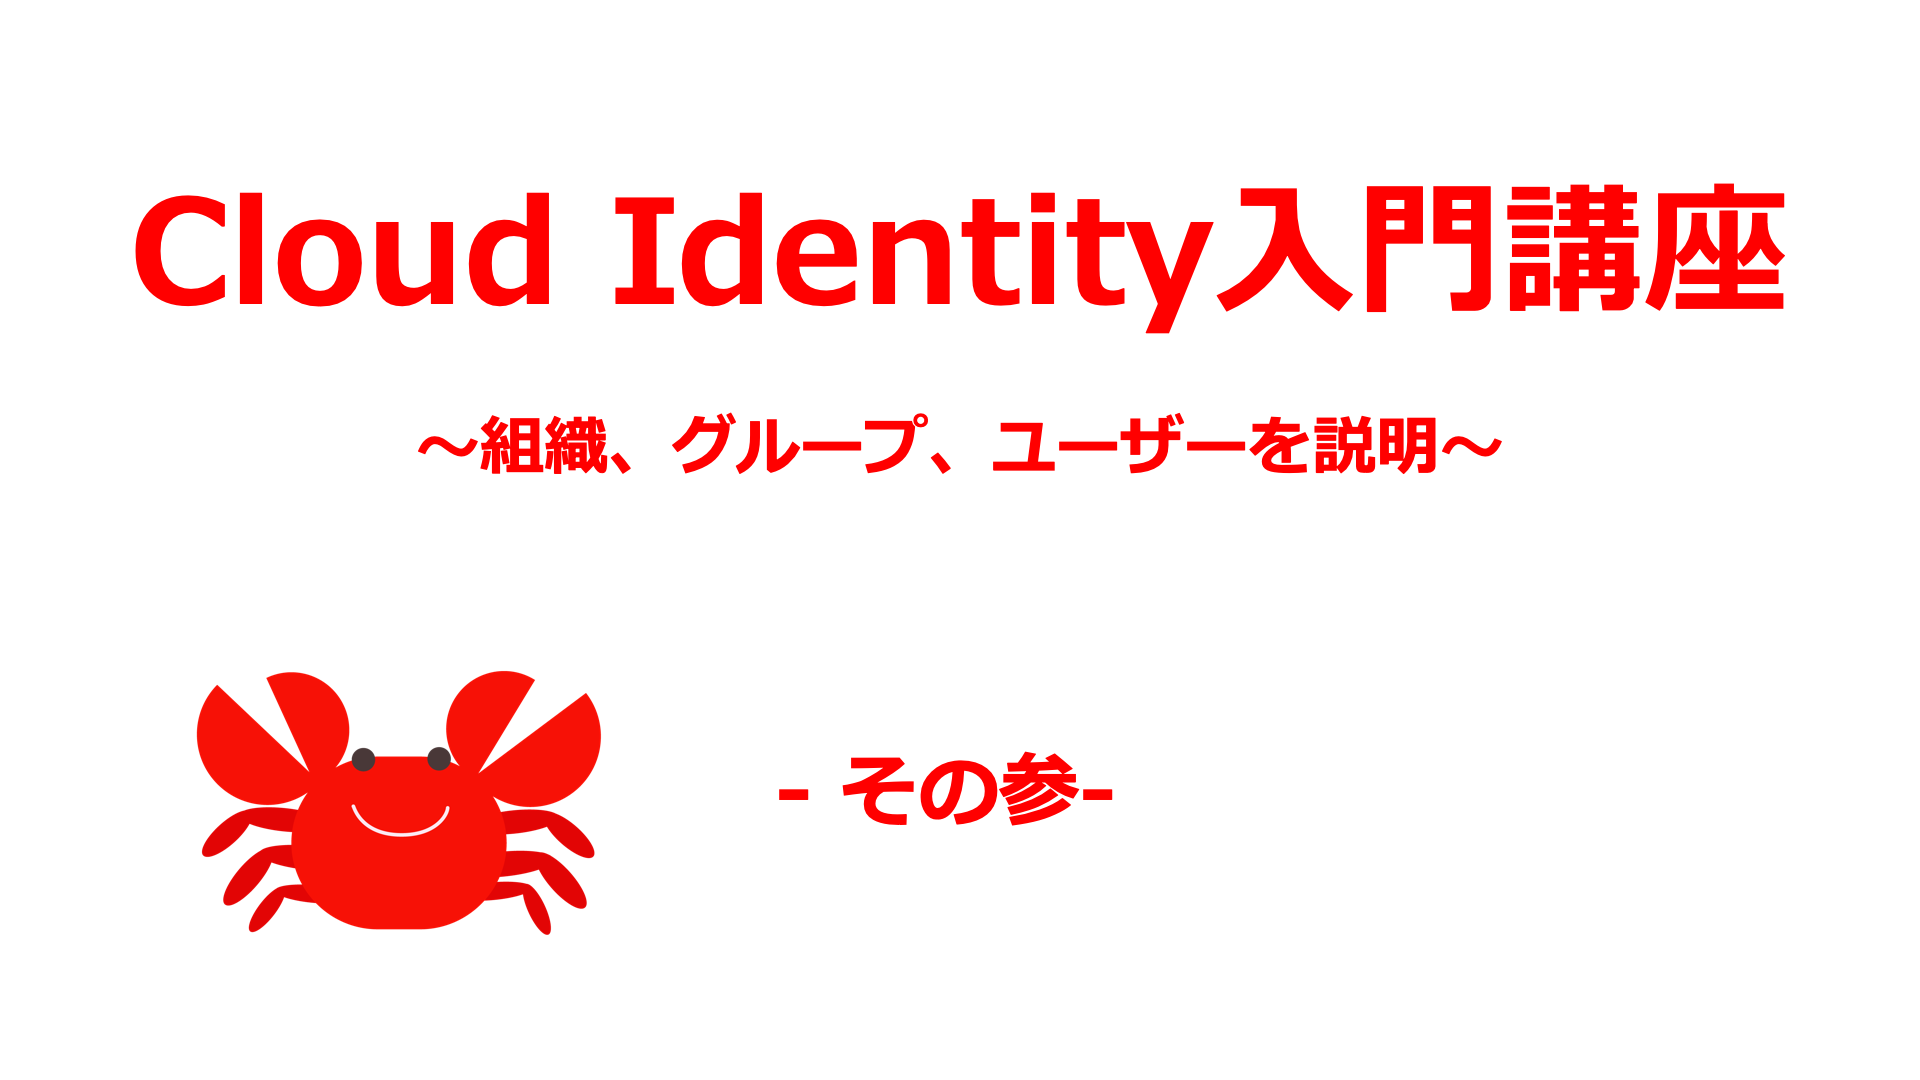 Cloud Identity03